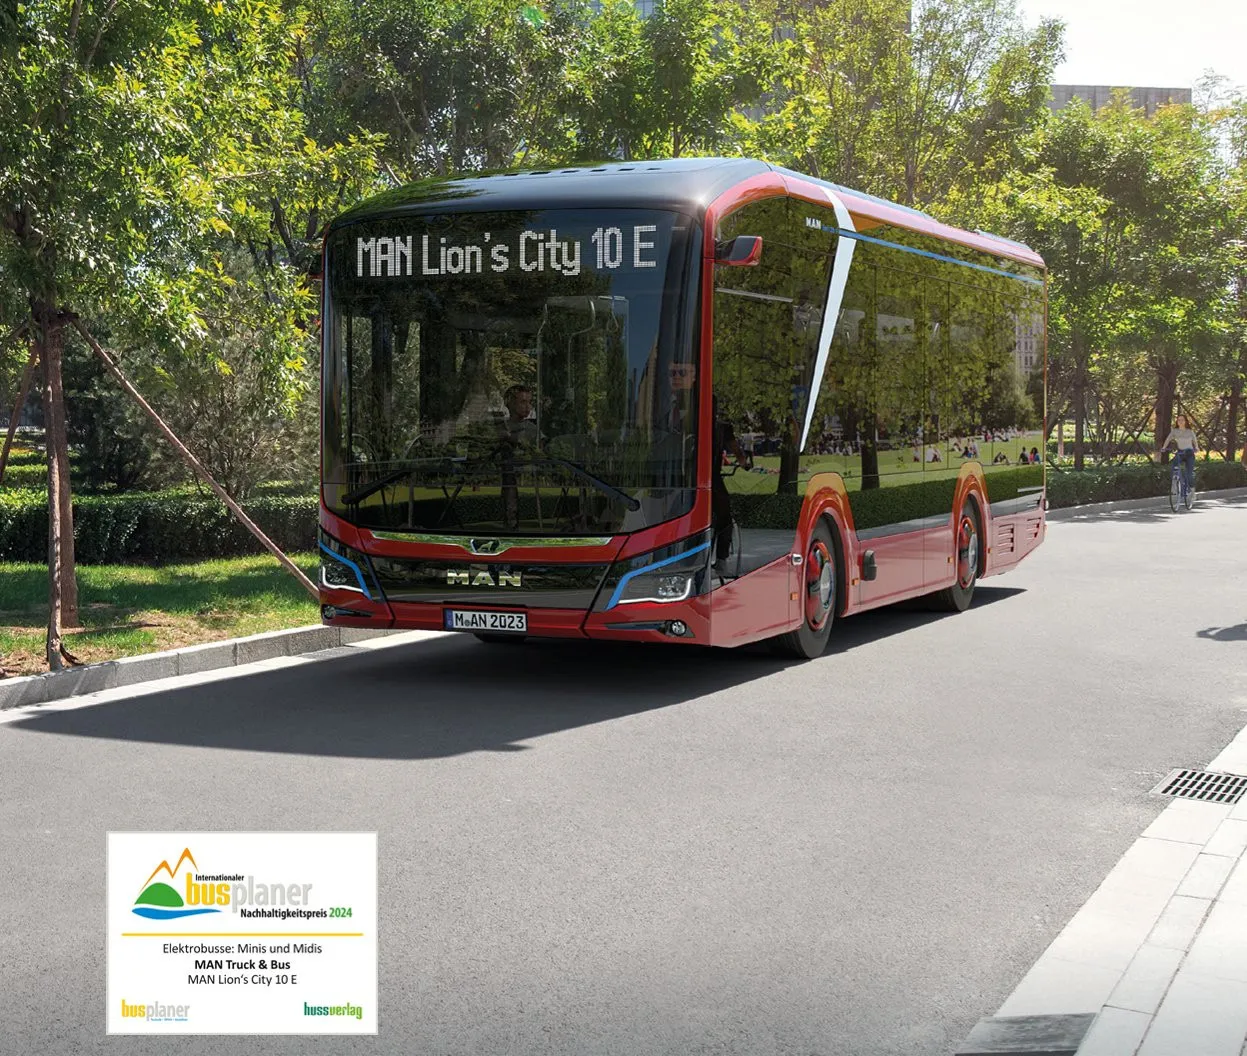 Internationaler Busplaner Nachhaltigkeitspreis 2024: MAN Lion’s City 10 E auf Platz eins